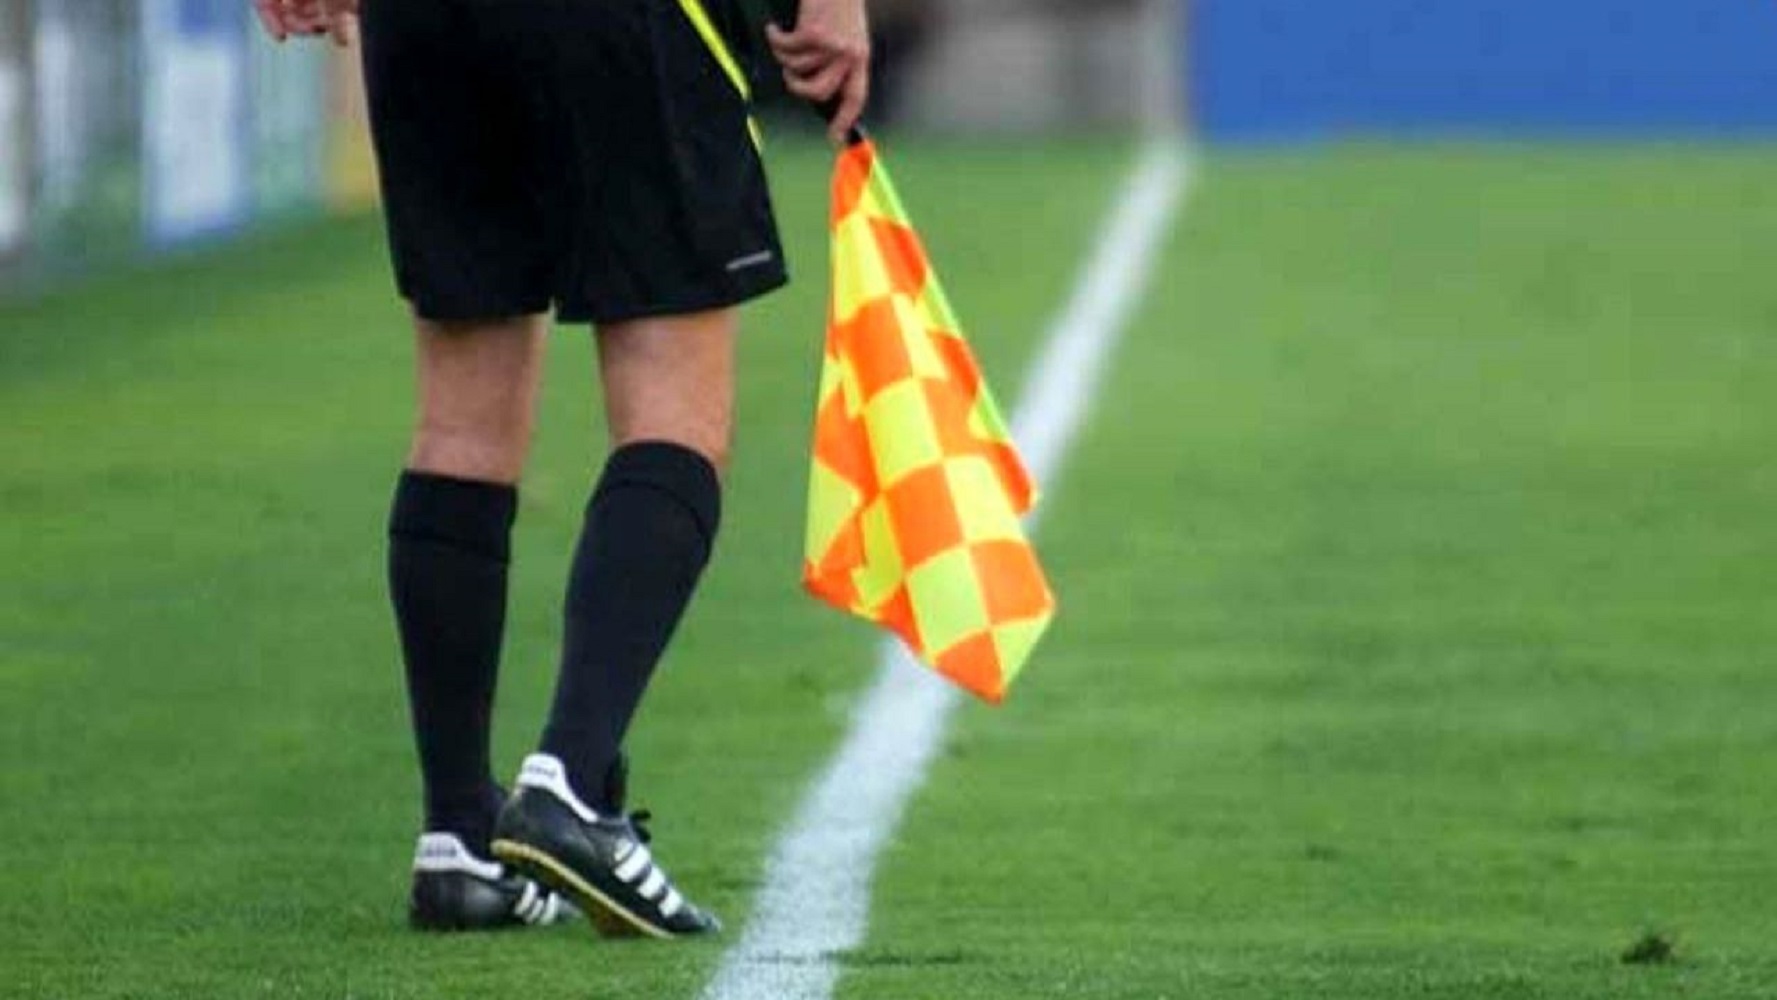 ابوالفضلی: لیست داوران اعلام شده از سوی فیفا برای جام جهانی قطعی نیست